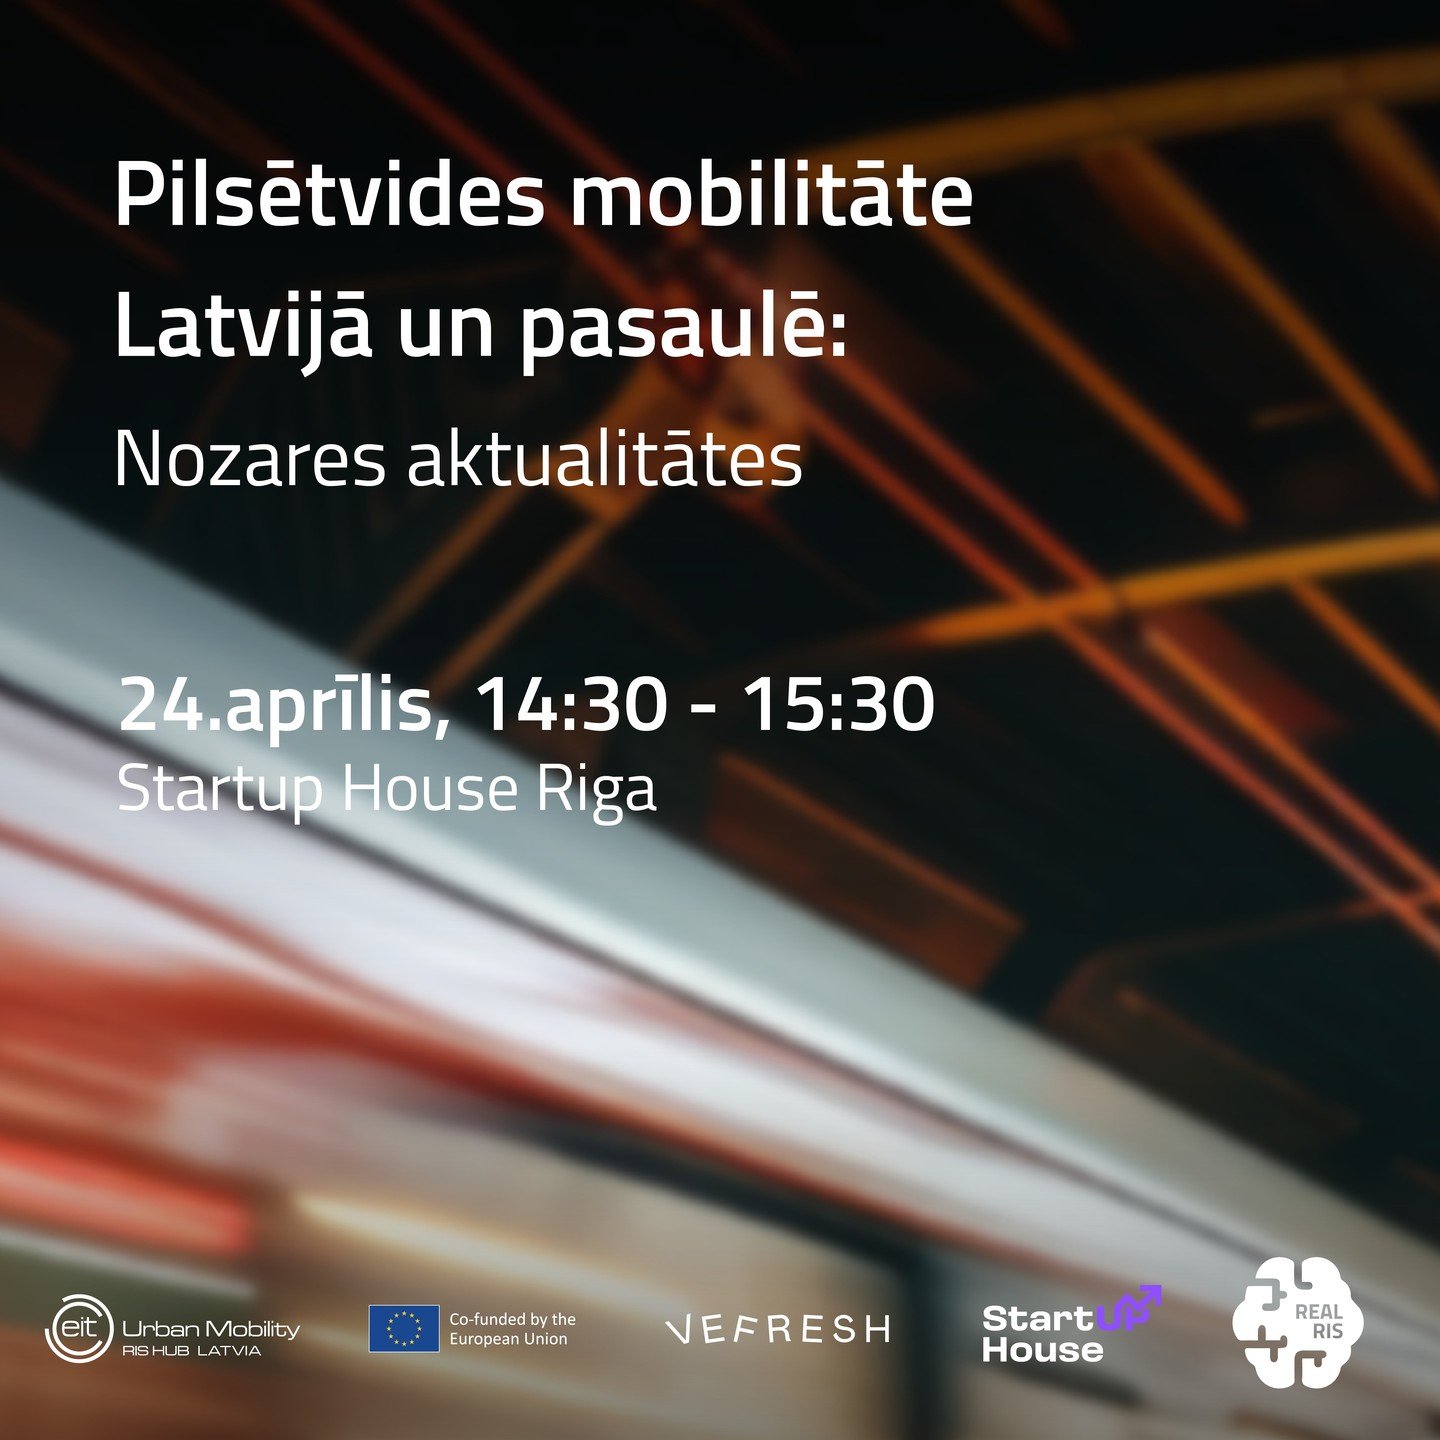 👋 Pievienojies pasākumam 24.aprīlī, 14:30 - 15:30 &ldquo;Pilsētvides mobilitāte: nozares aktualitātes un finansējuma iespējas&rdquo;. 🚙 Uzzini diskusijā par pilsētvides mobilitātes aktuālitātēm, bet seminārā - par finansējuma iespējām inovatīviem p